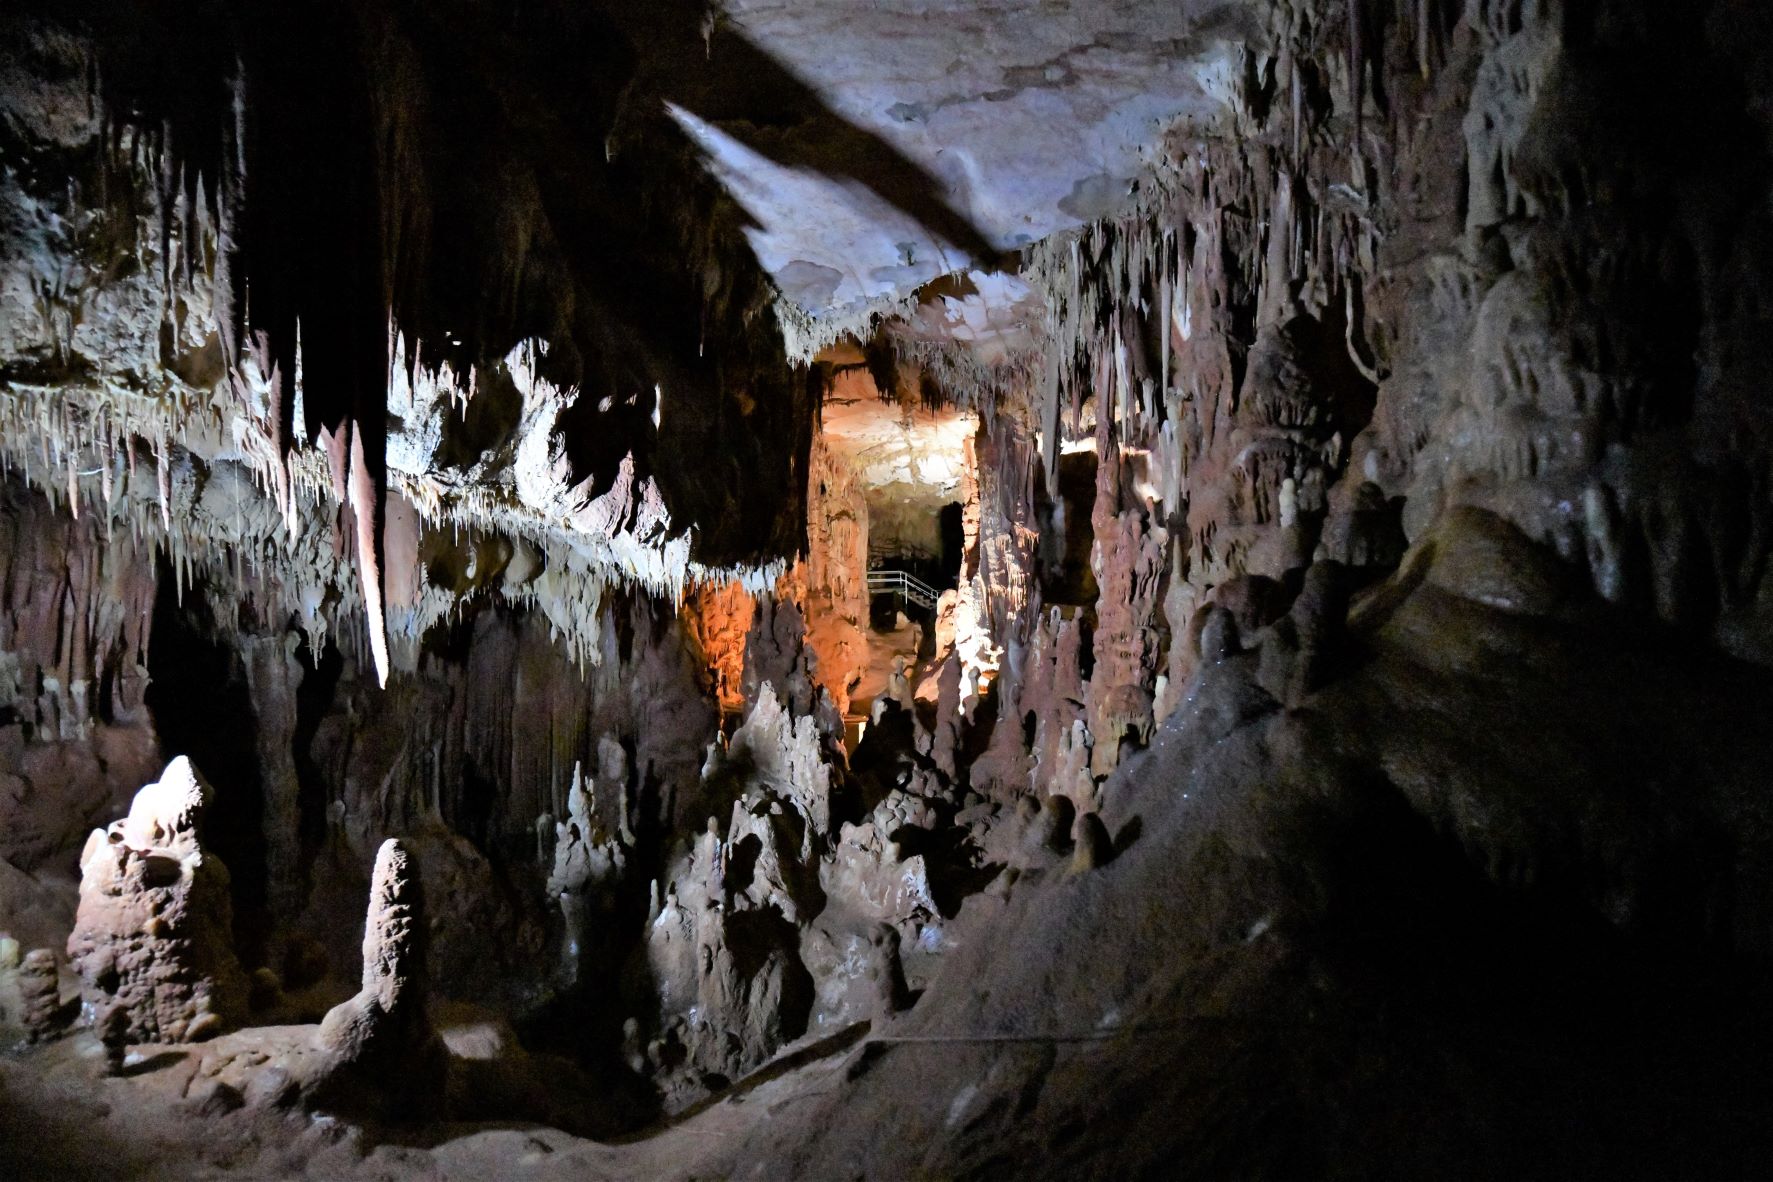 Χαλκιδική: Εικόνες από το σπήλαιο των Πετραλώνων – Μυστήριο με τον αρχαιότερο άνθρωπο στην Ευρώπη